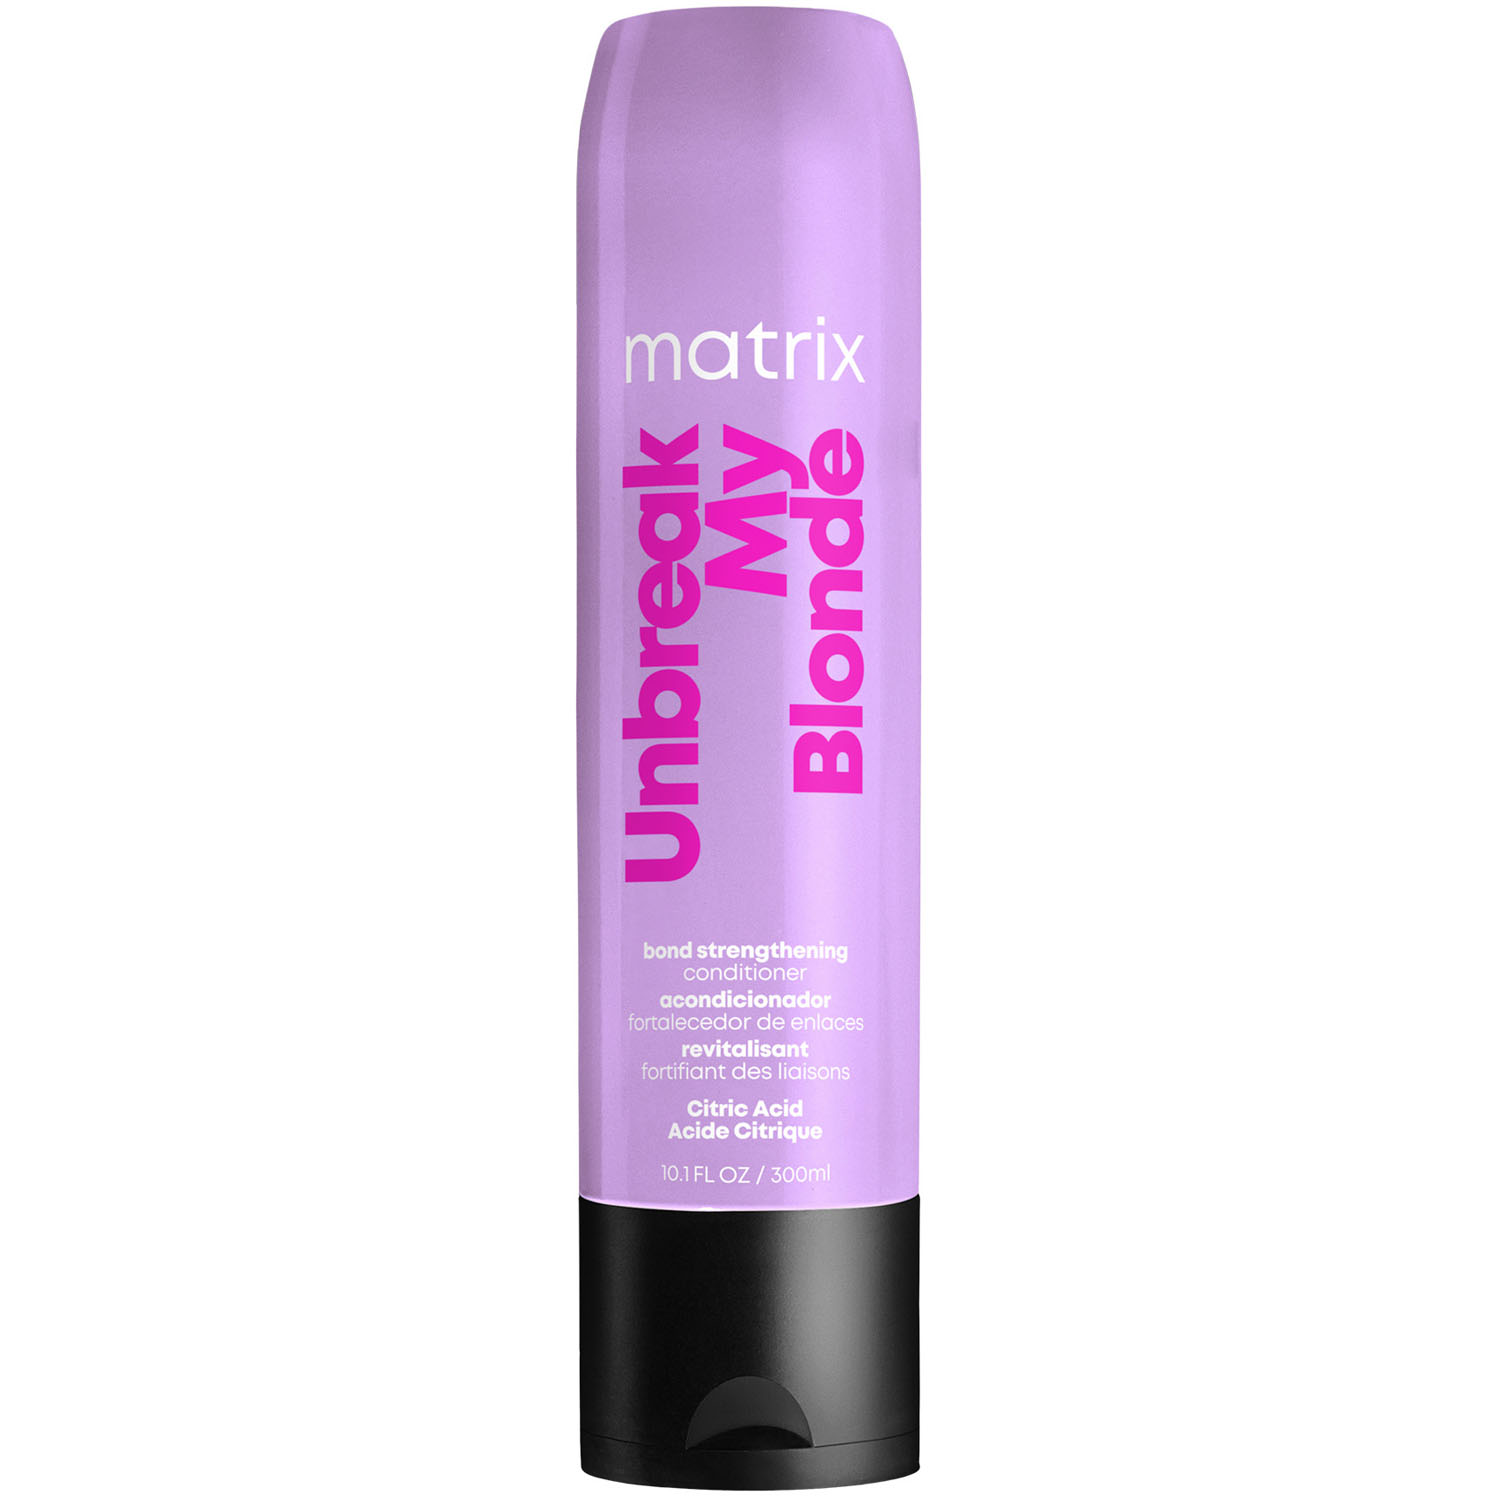 Matrix Укрепляющий кондиционер для осветленных волос, 300 мл (Matrix, Total results) matrix укрепляющий кондиционер для осветленных волос 300 мл matrix total results